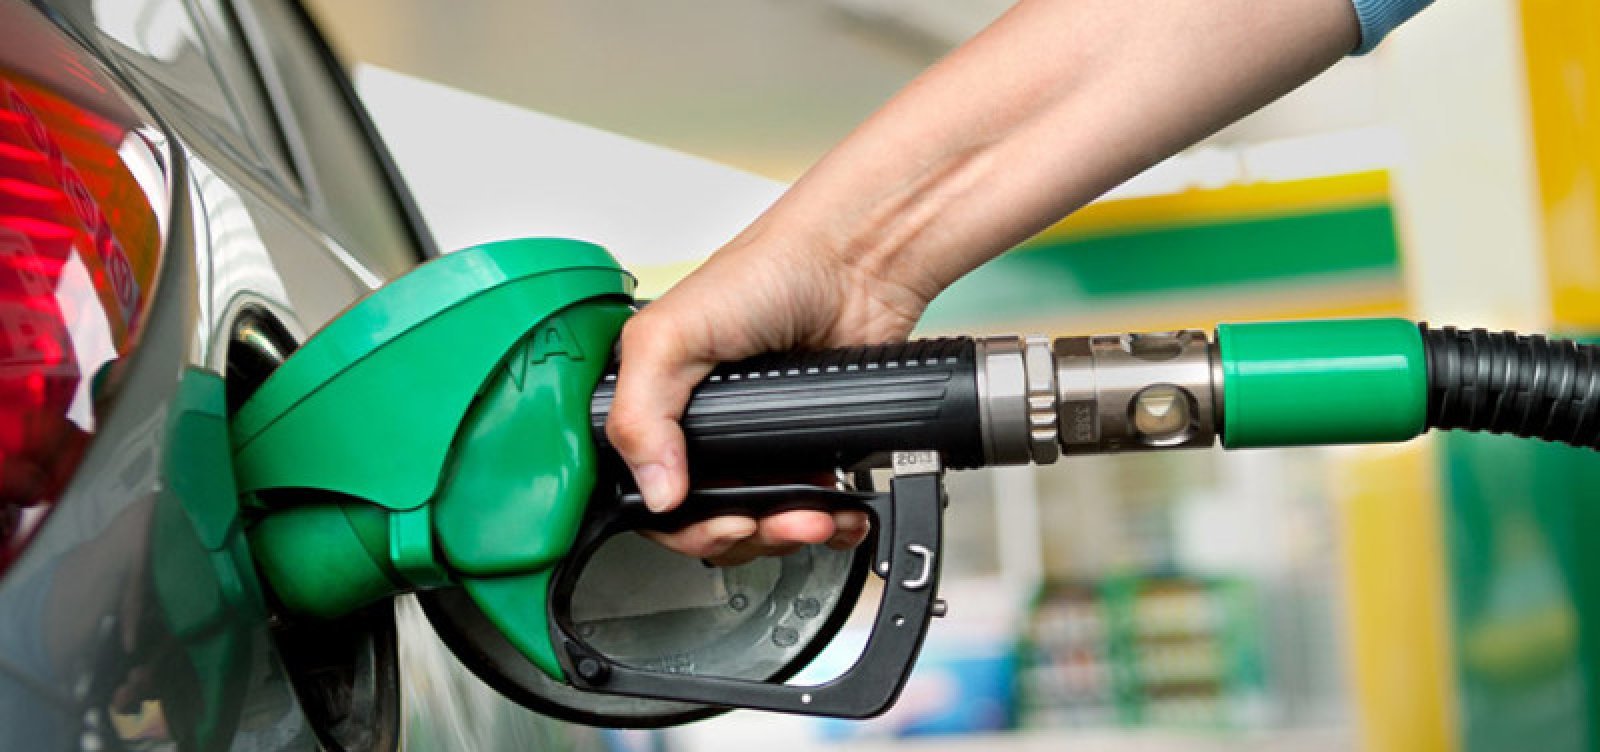 Gasolina fica 3% mais barata nos postos, depois de corte nos preços da Petrobras